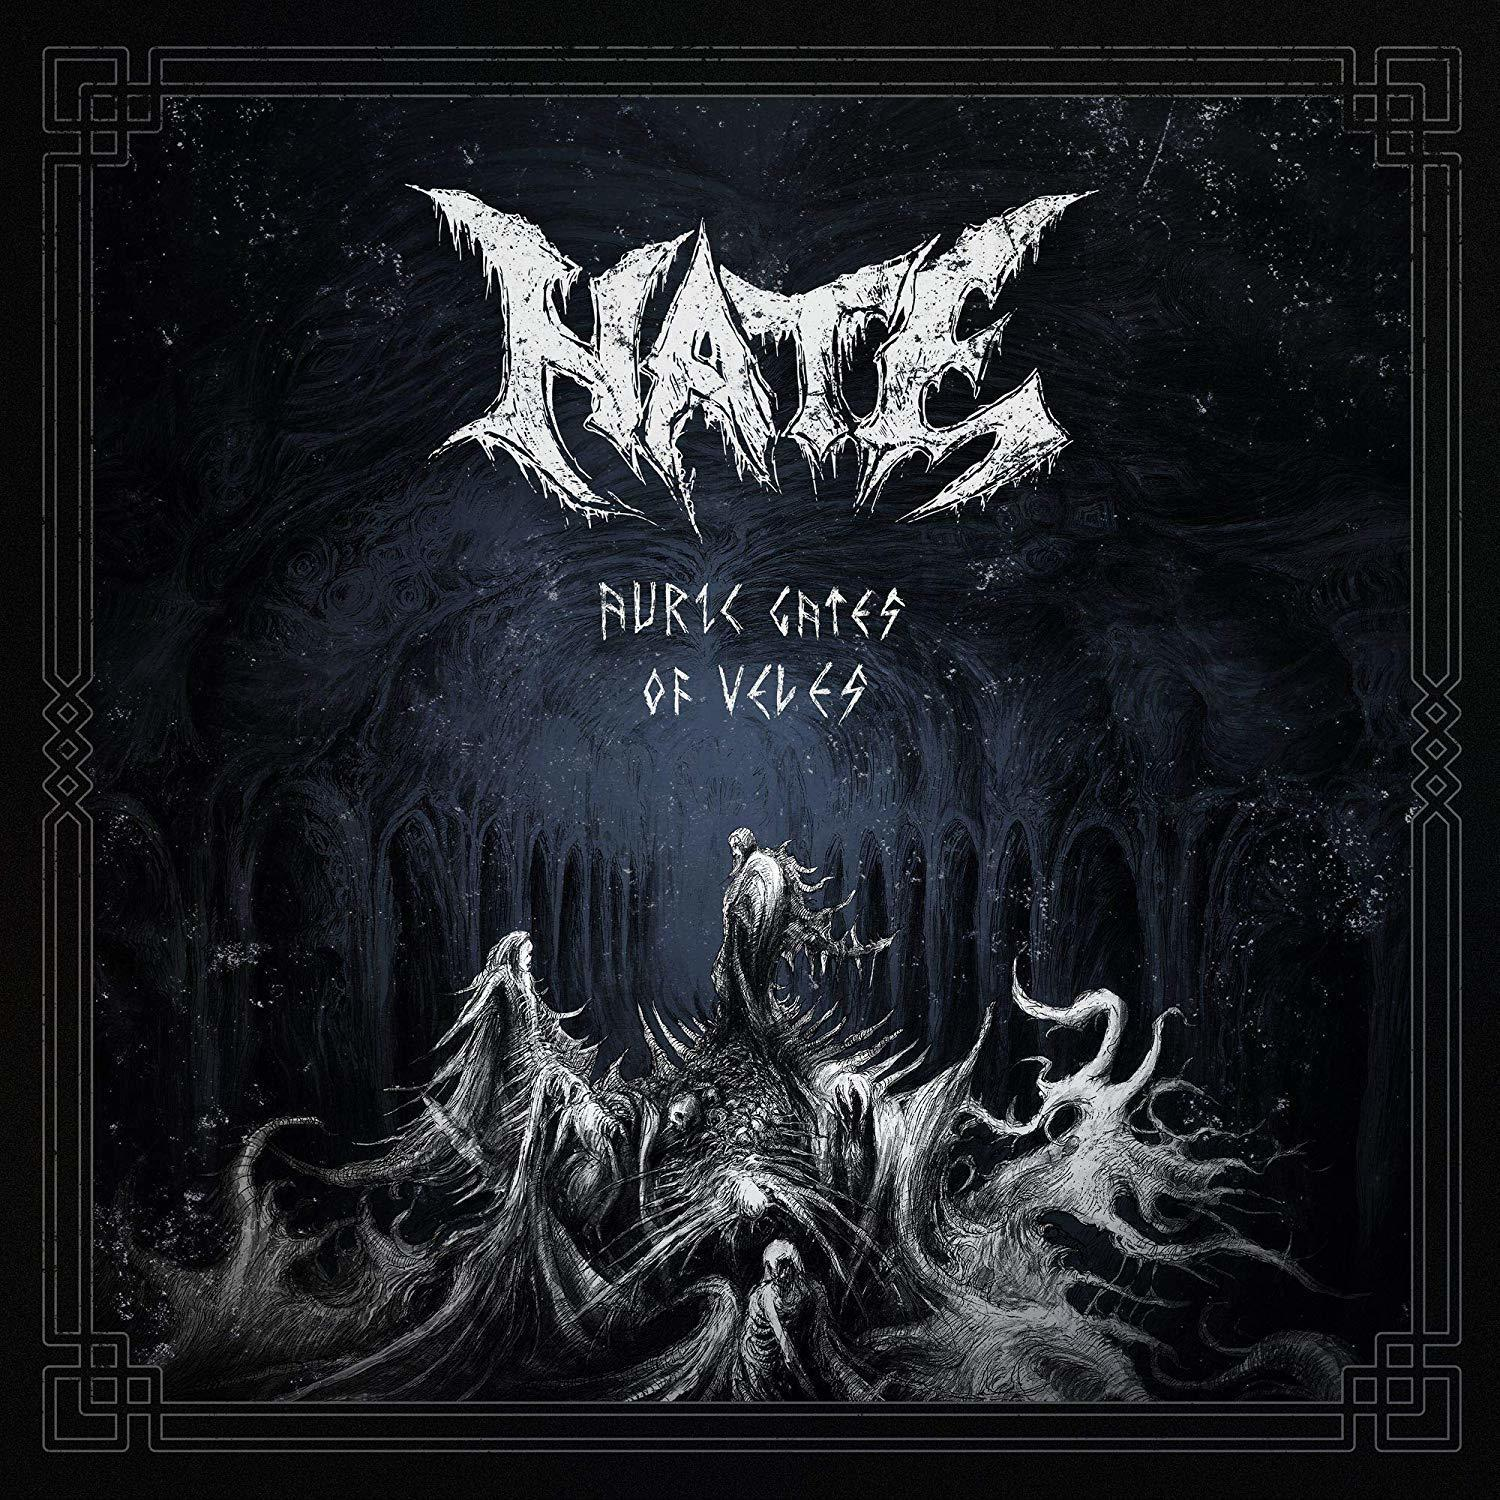 Gates - - Auric Hate Of (Vinyl) Veles